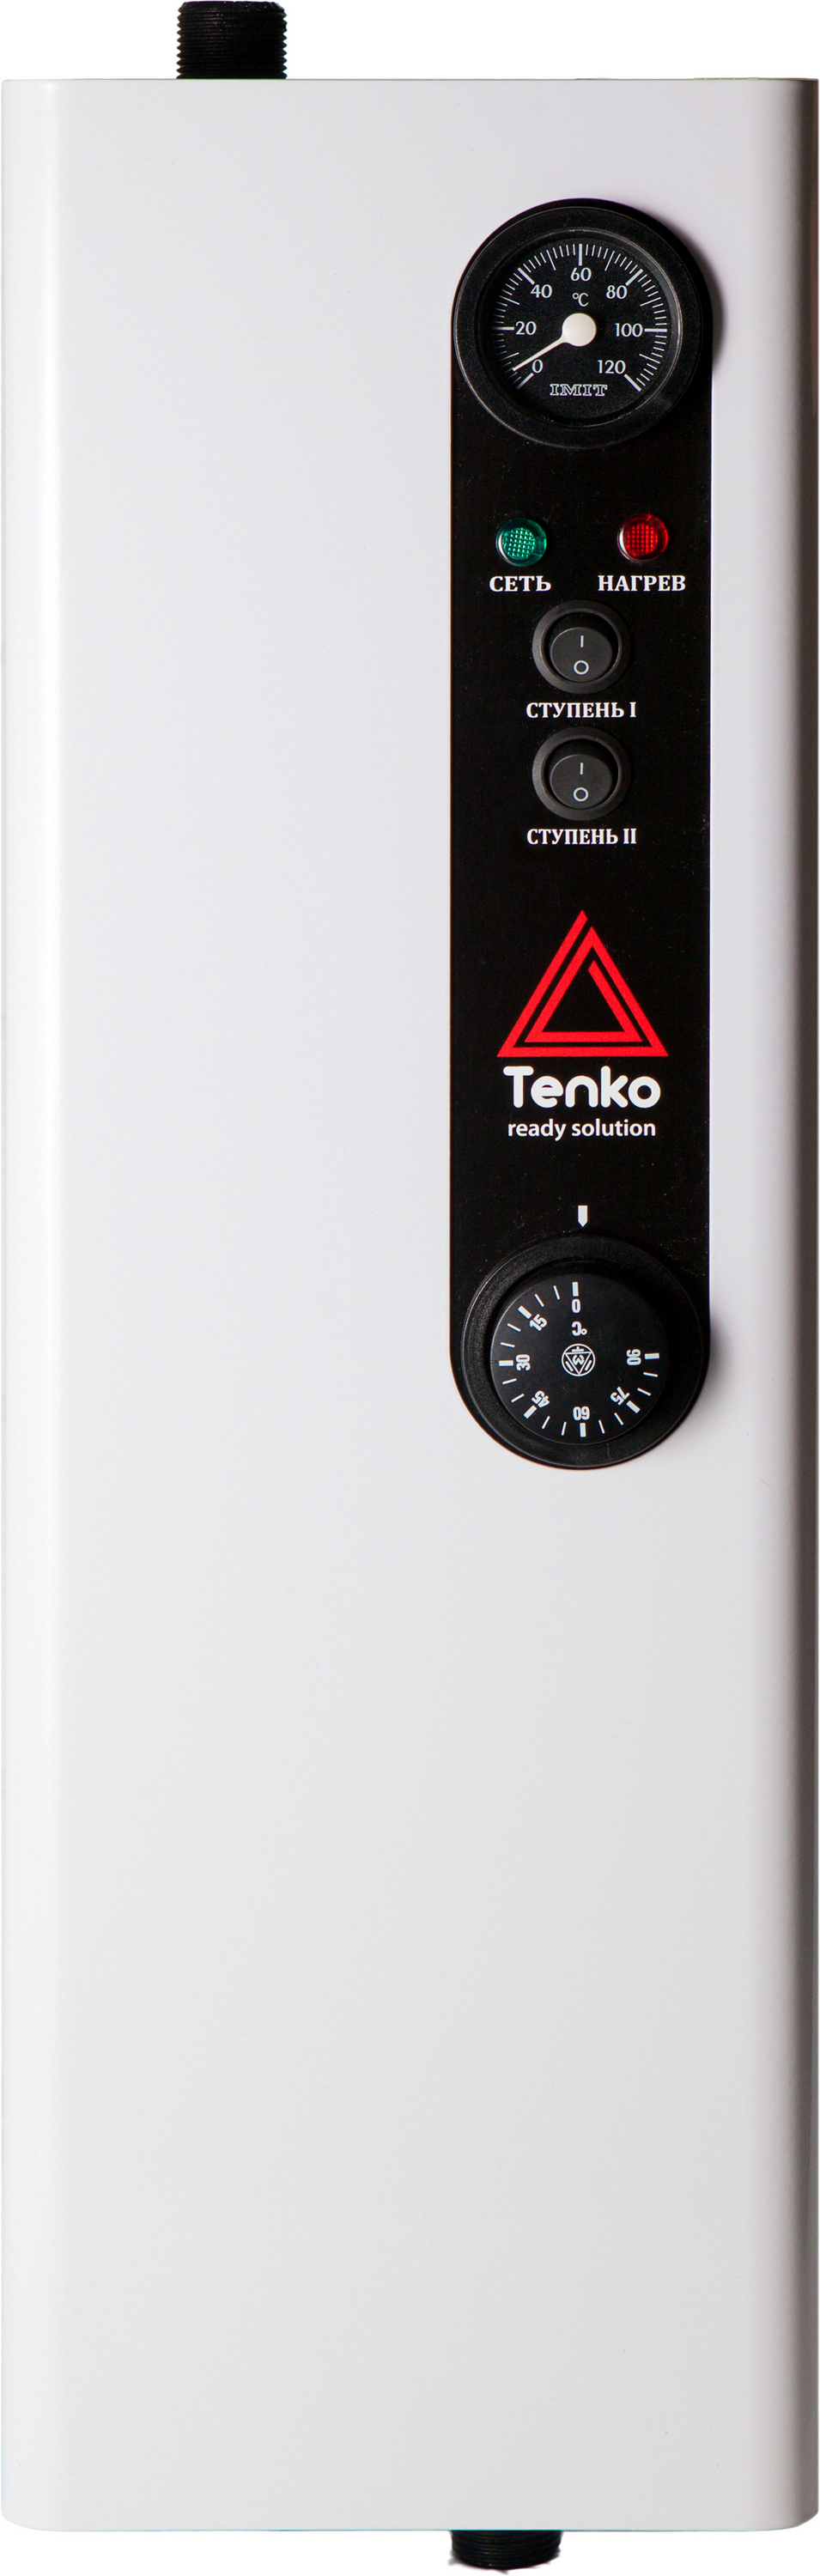 Характеристики одноконтурный электрокотел Tenko Эконом 12 380